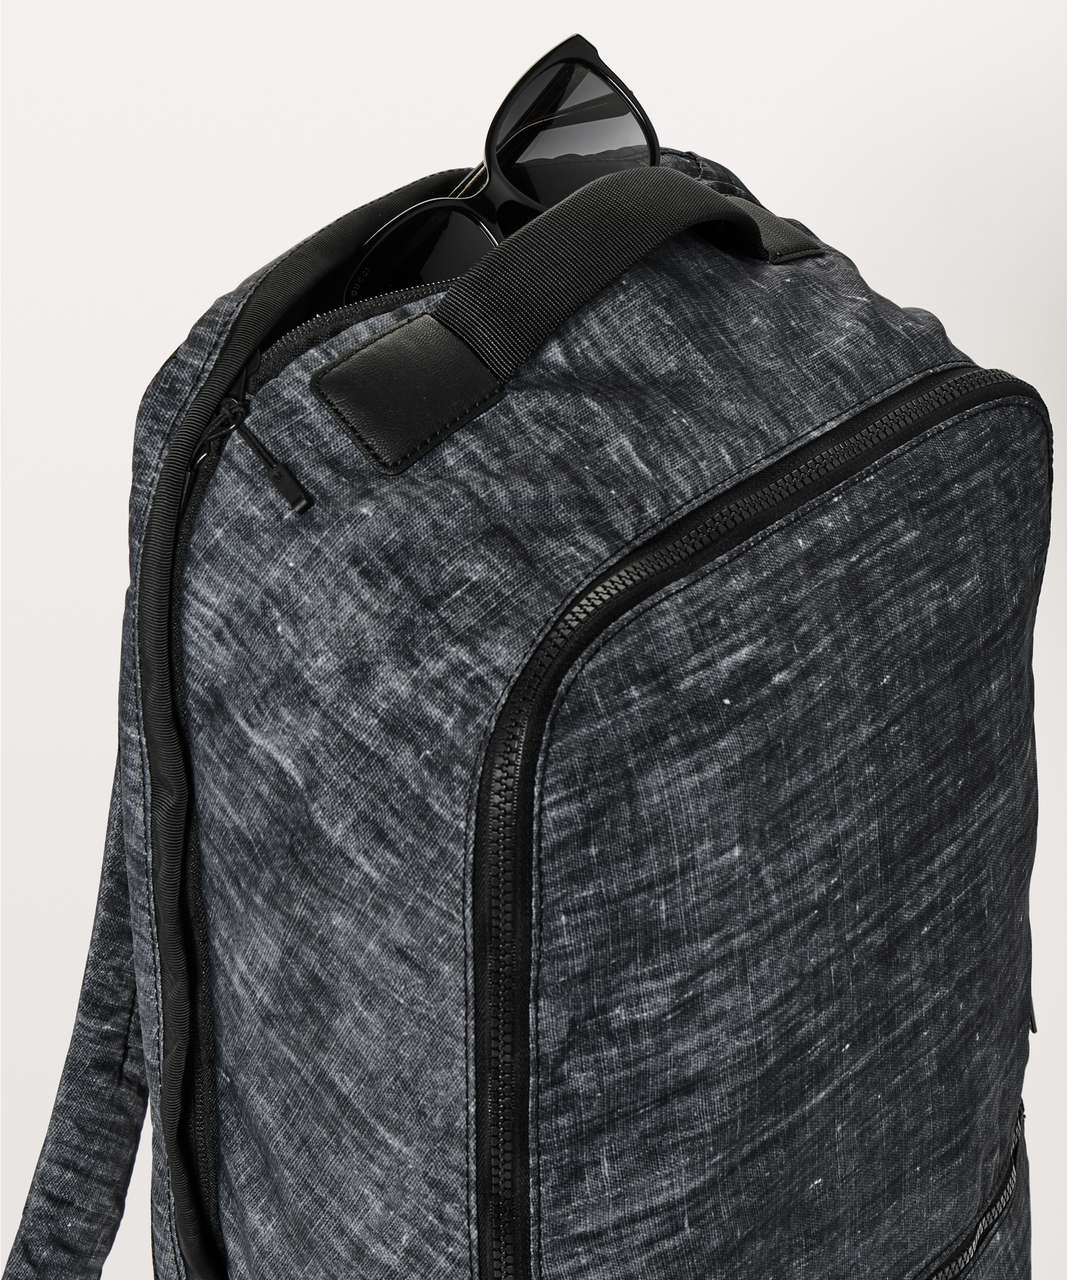 Lululemon City Adventurer Backpack Large *24L - Etched / Black